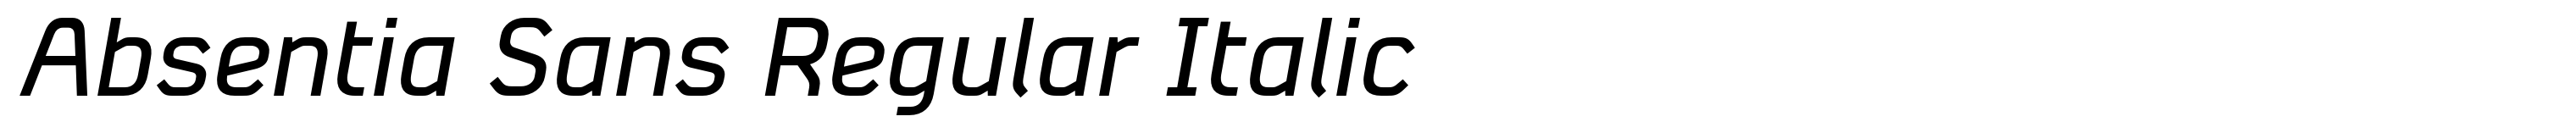 Absentia Sans Regular Italic